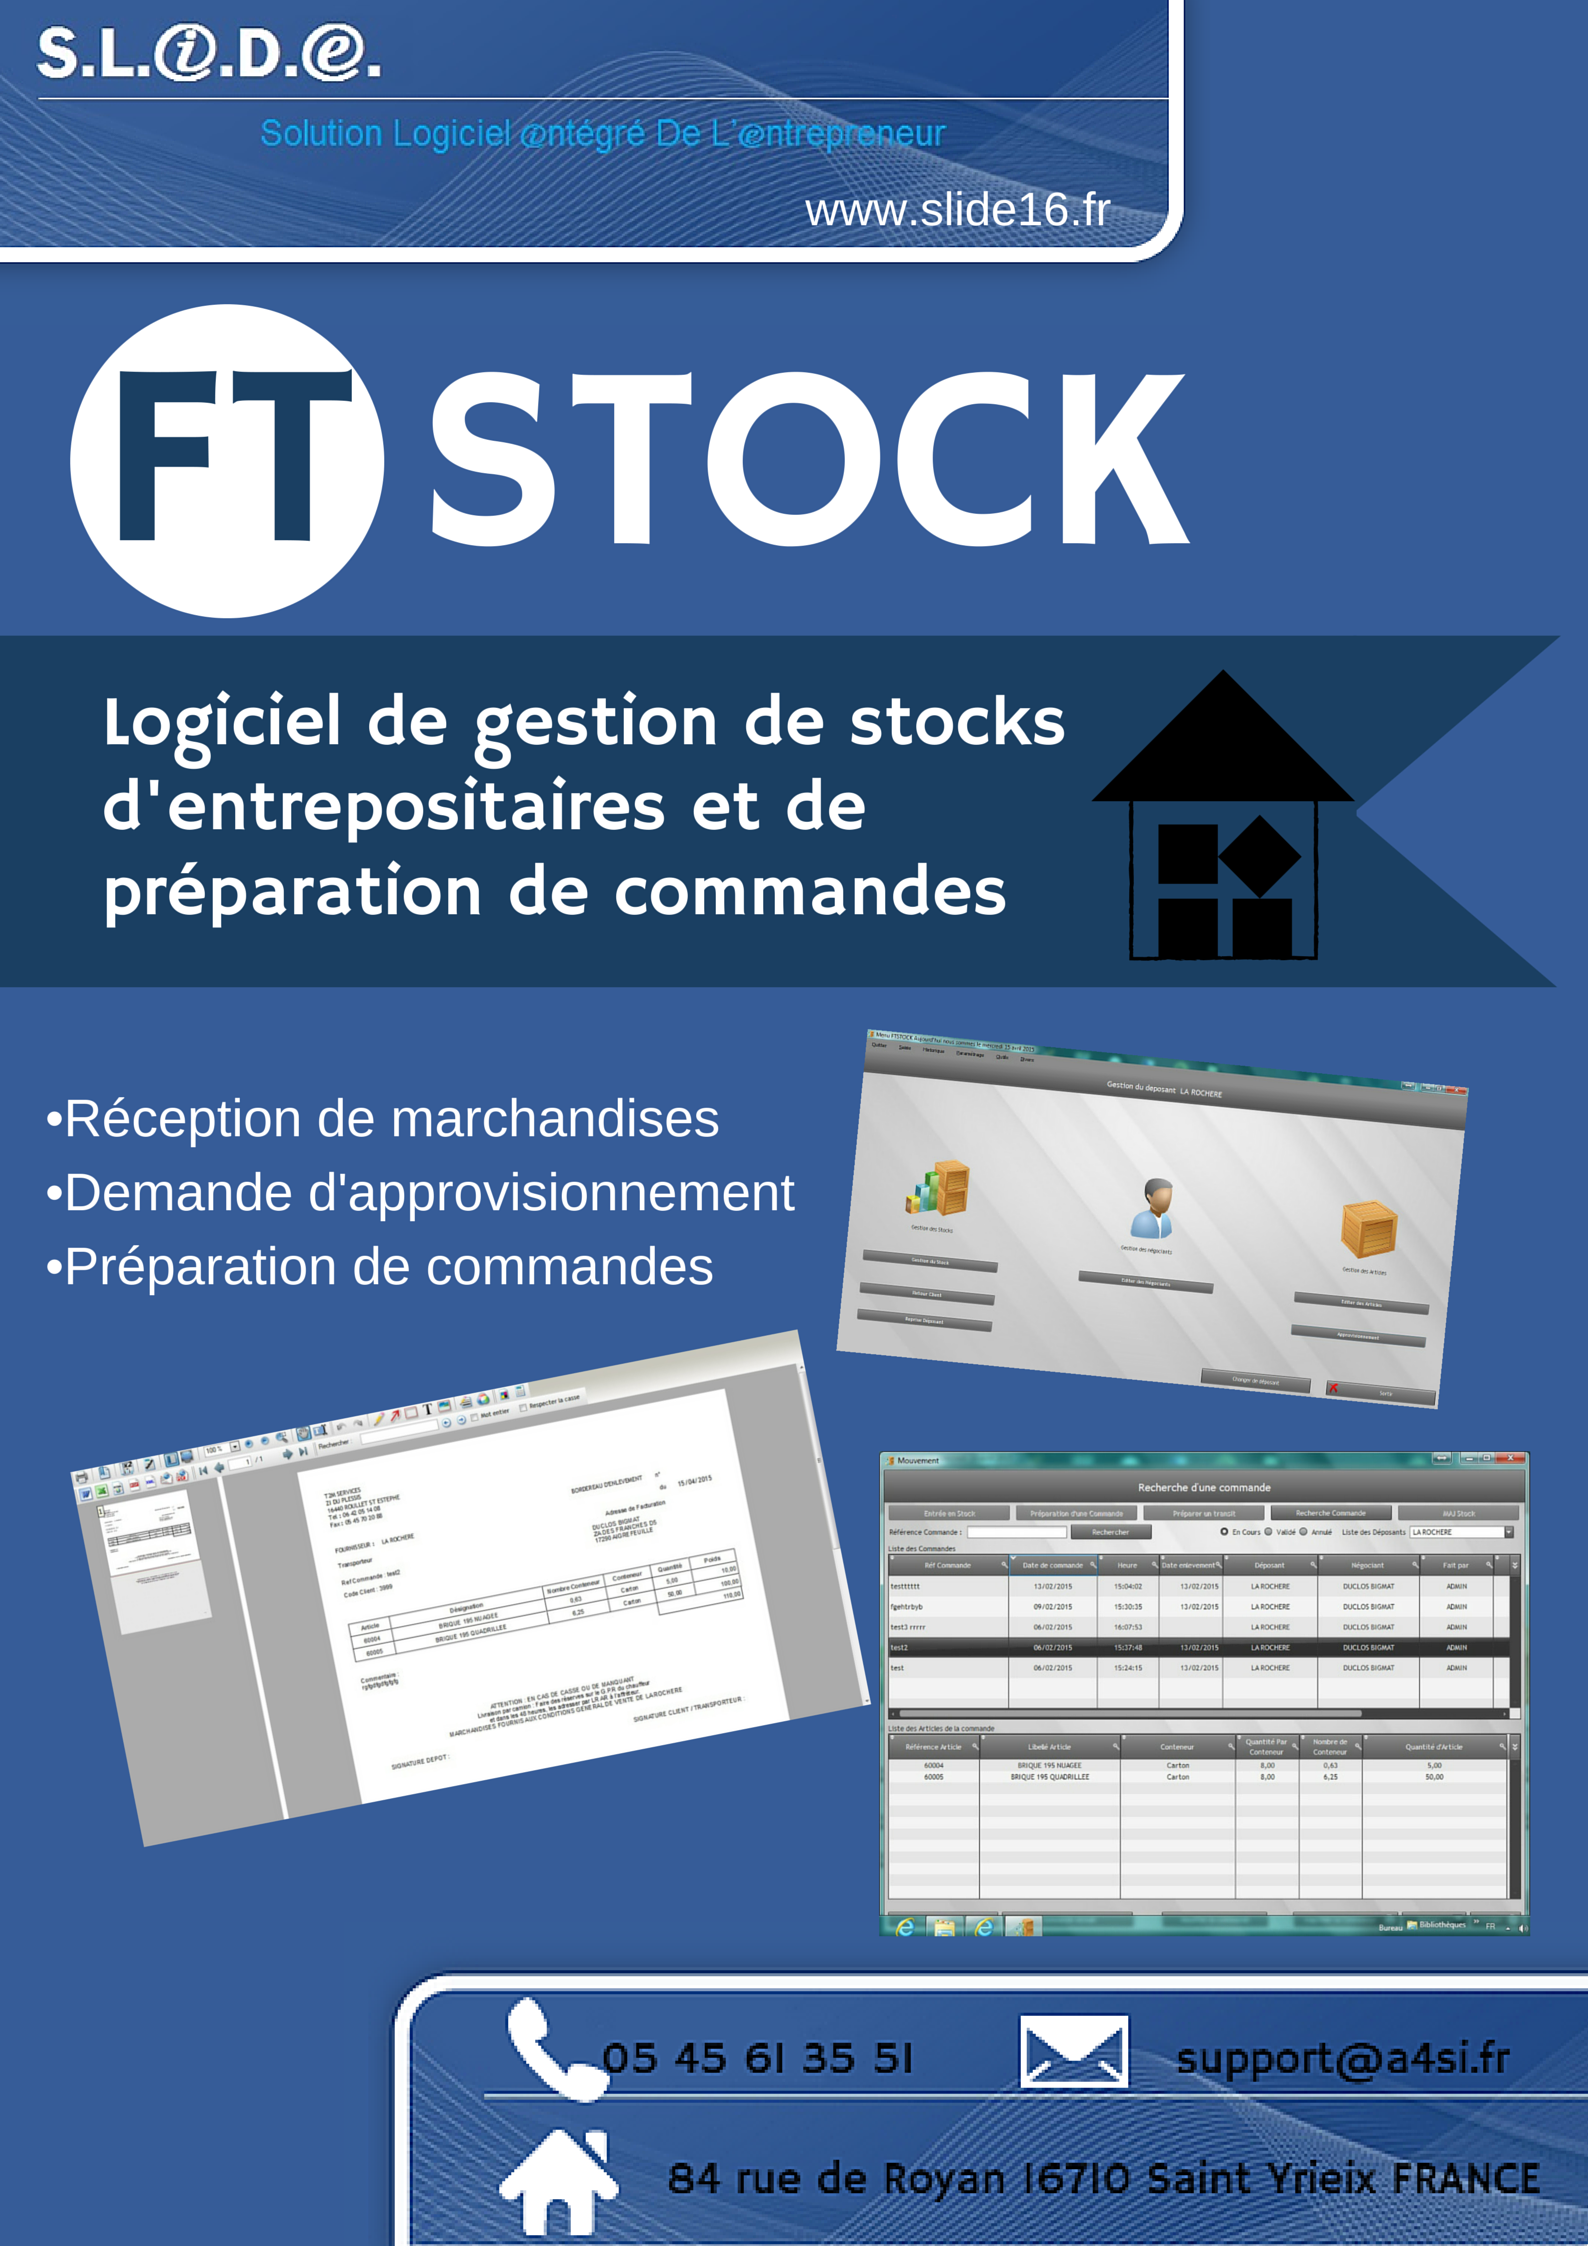 Logiciel de gestion de stocks d'entrepositaires et de préparation de commandes FTSTOCK